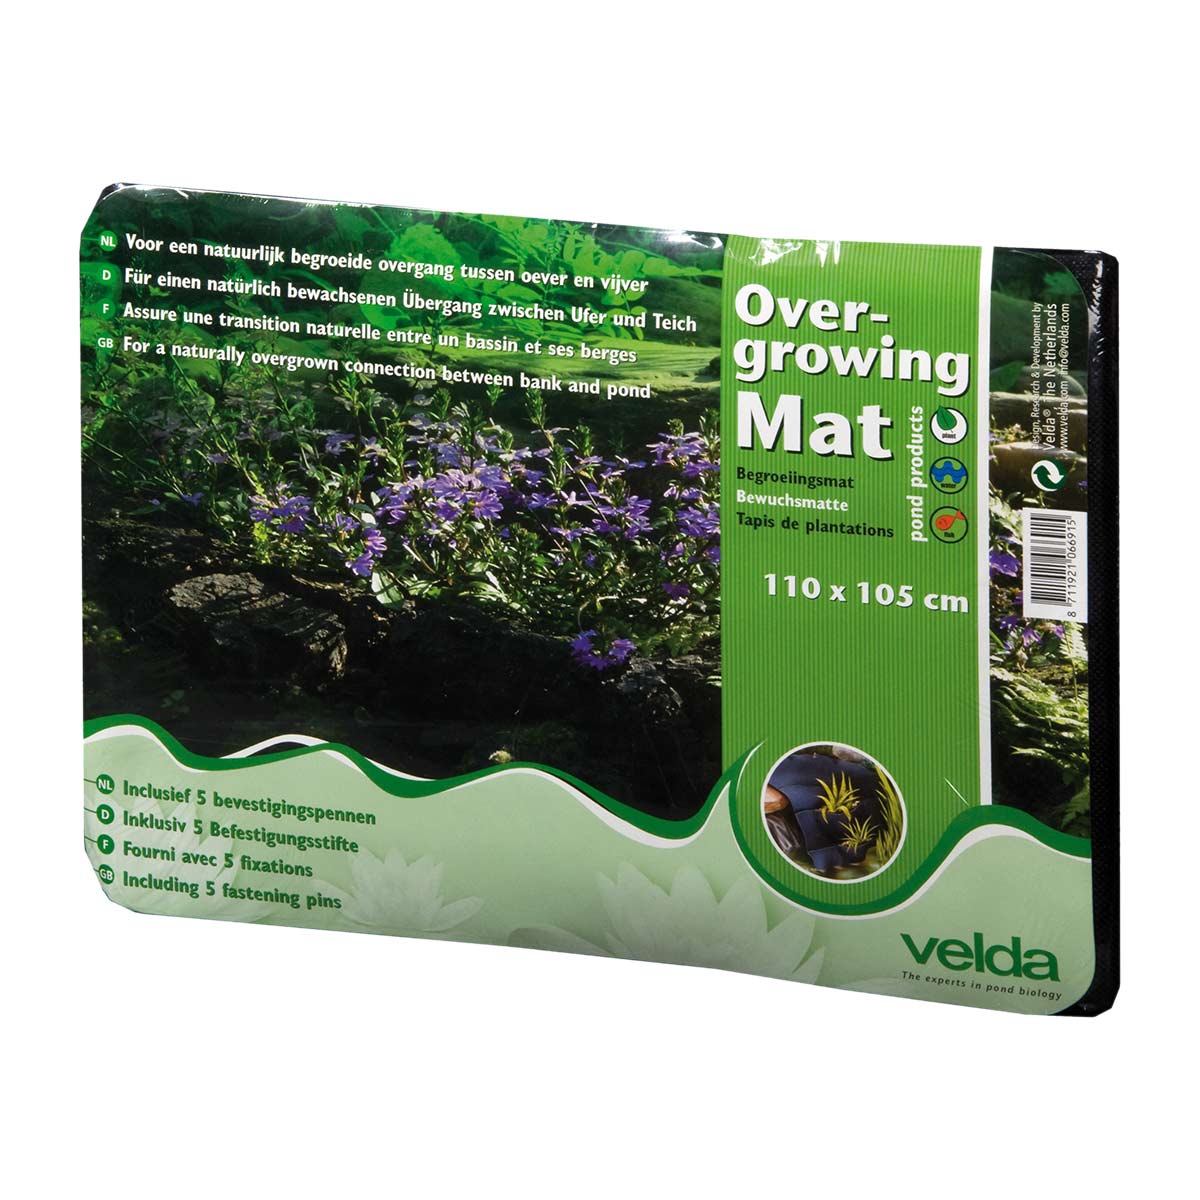 Velda Overgrowing Mat (Bewuchsmatte) 110 x 105 cm von Velda